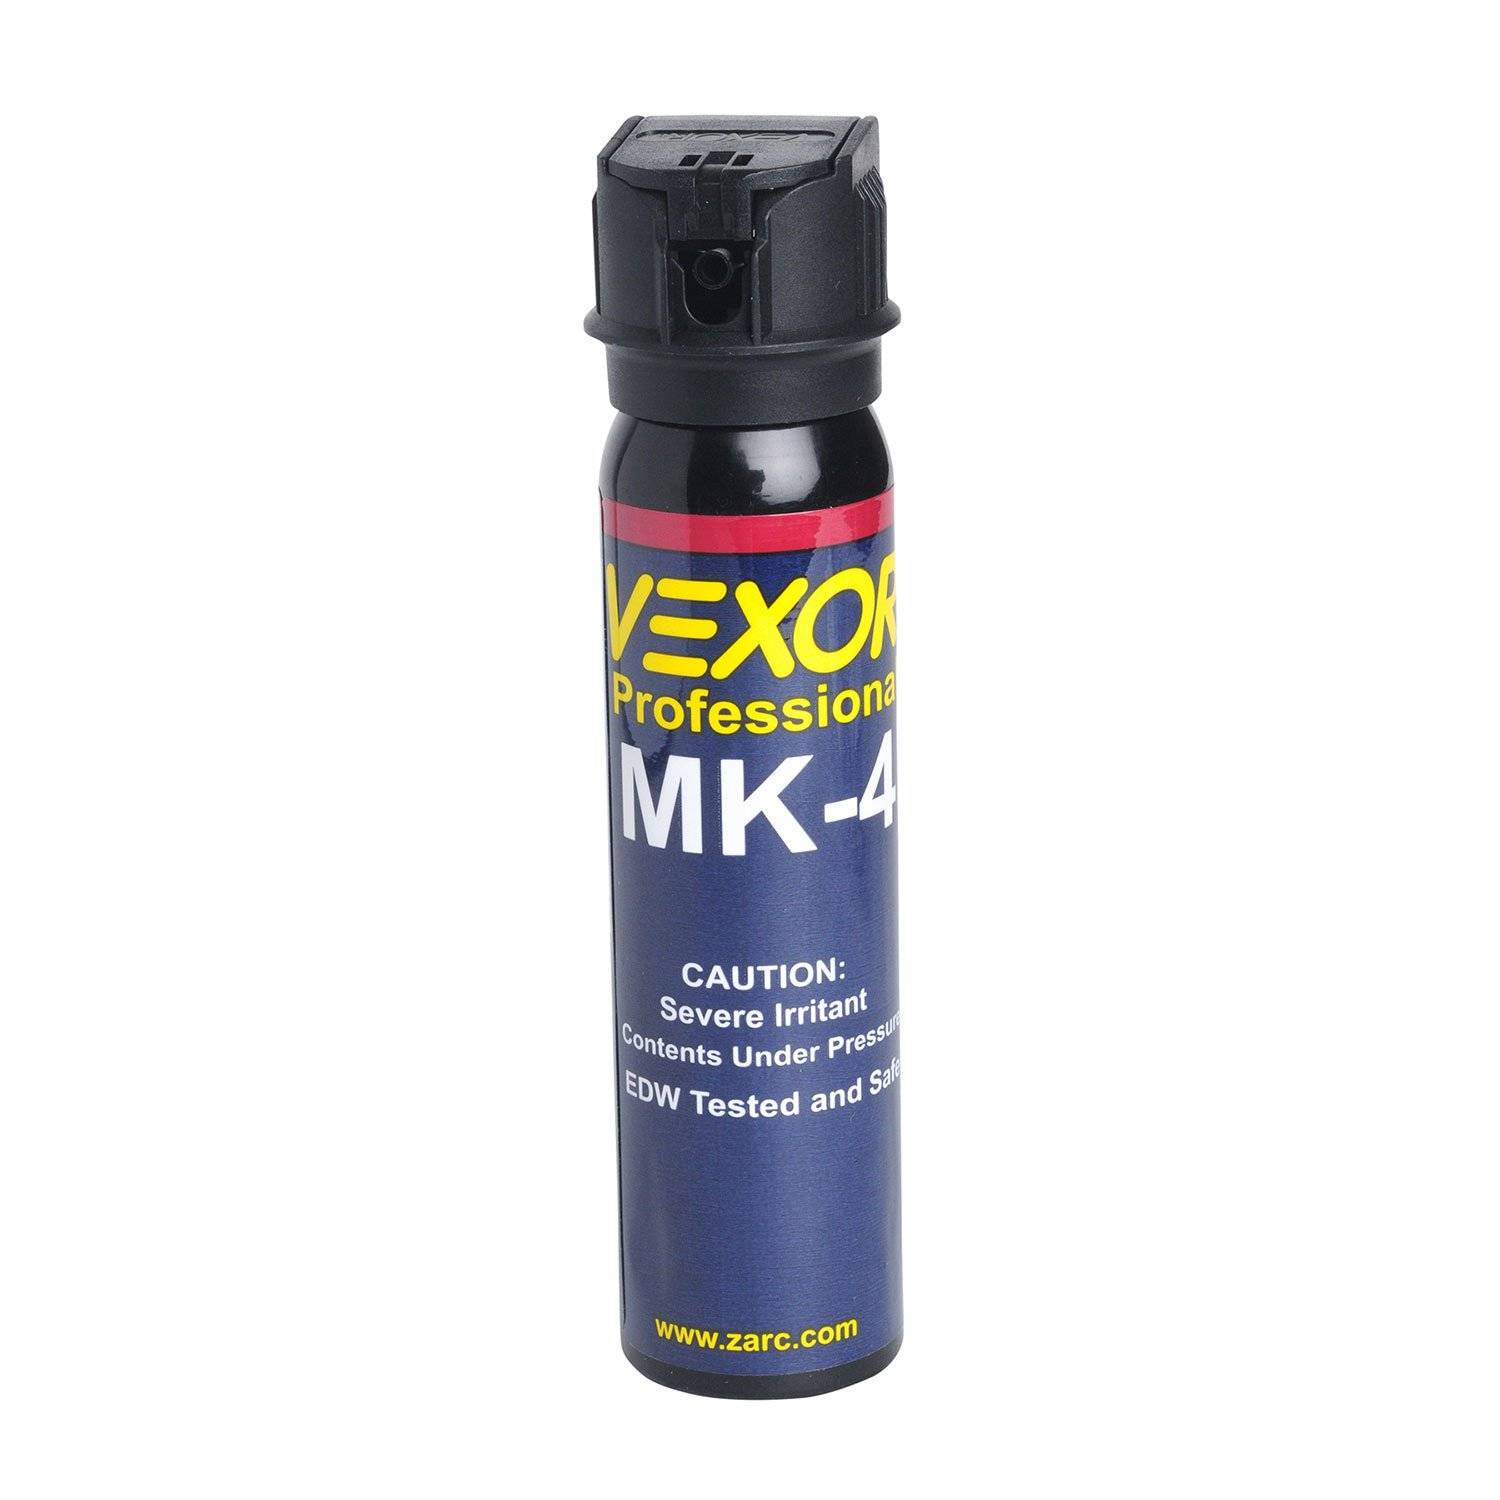 Vexor MK-4 Full Axis Flip Top Pepper Spray